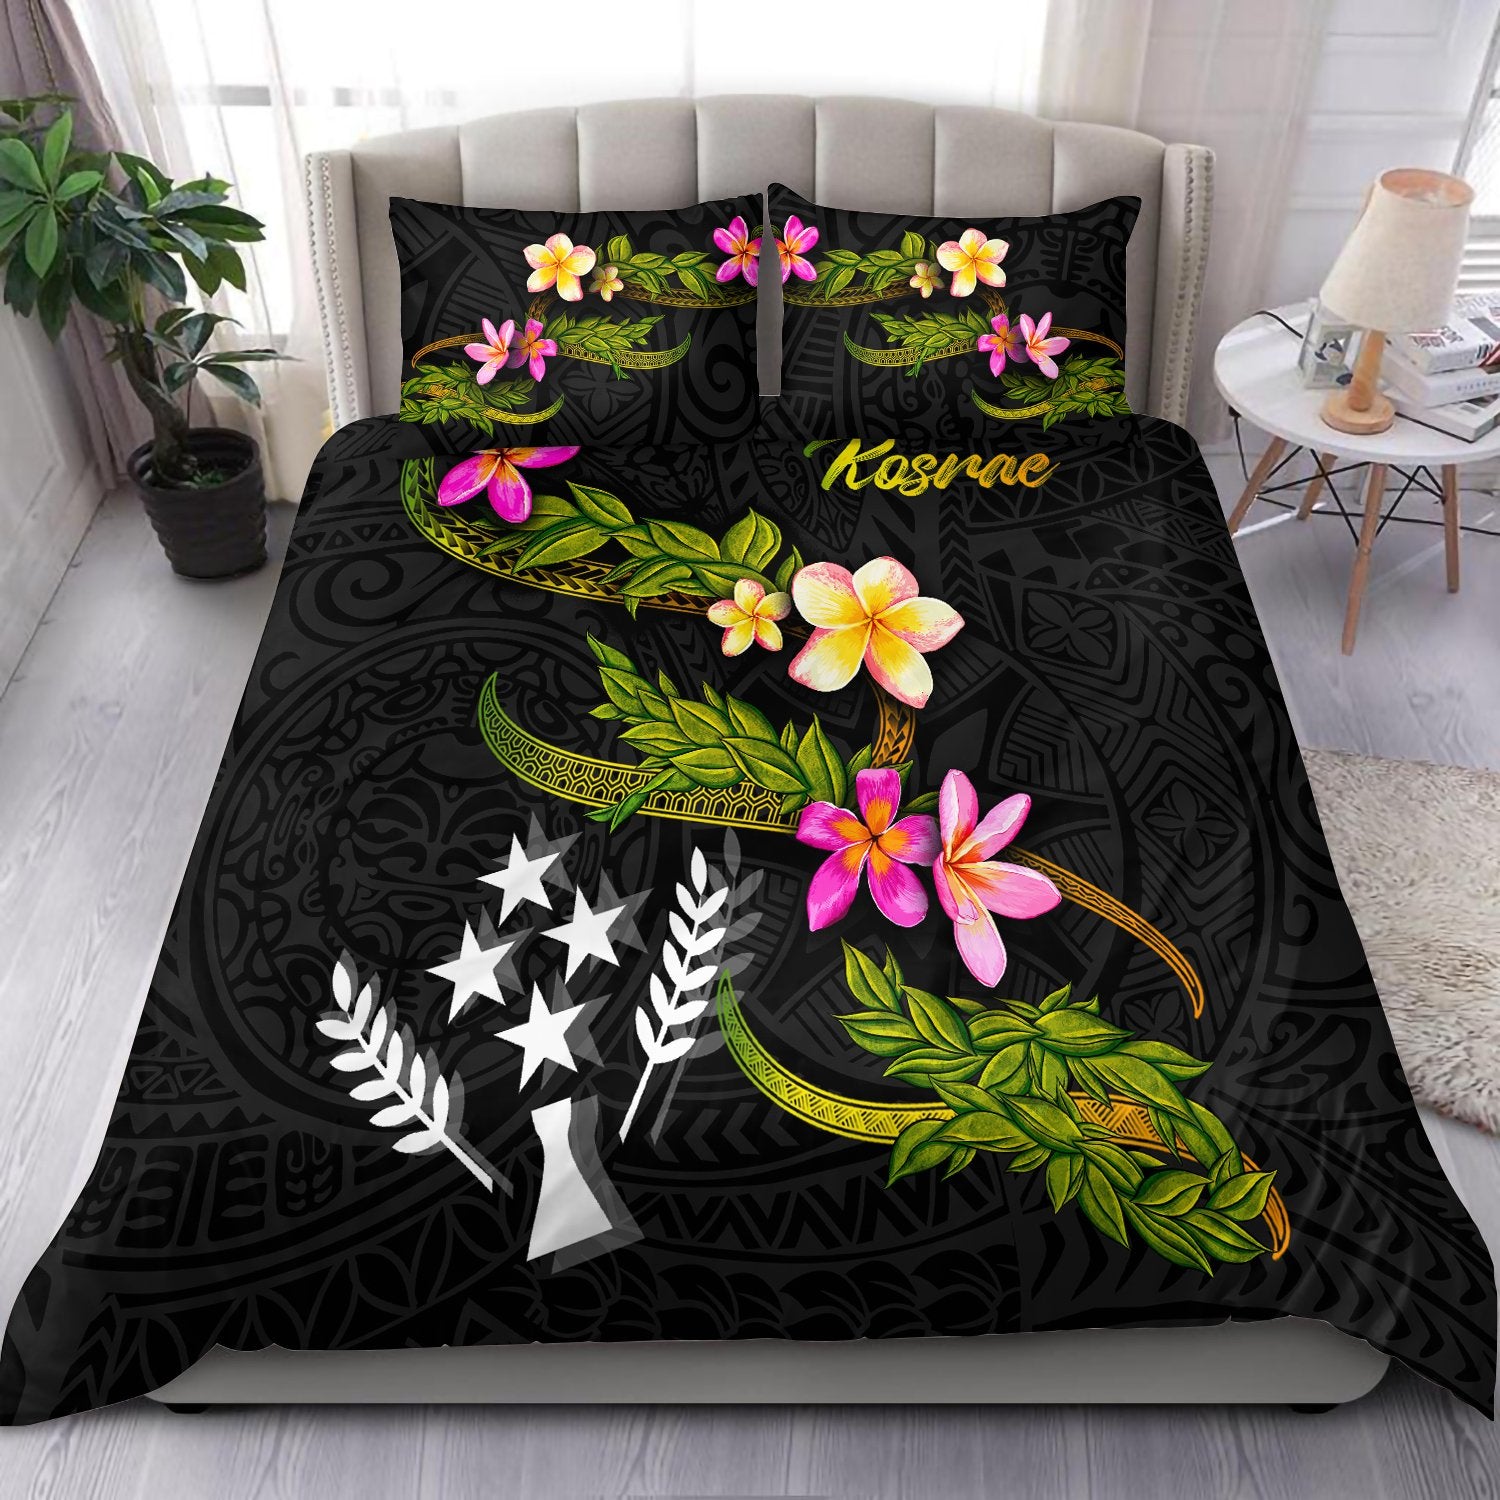 kosrae-polynesian-bedding-set-plumeria-tribal